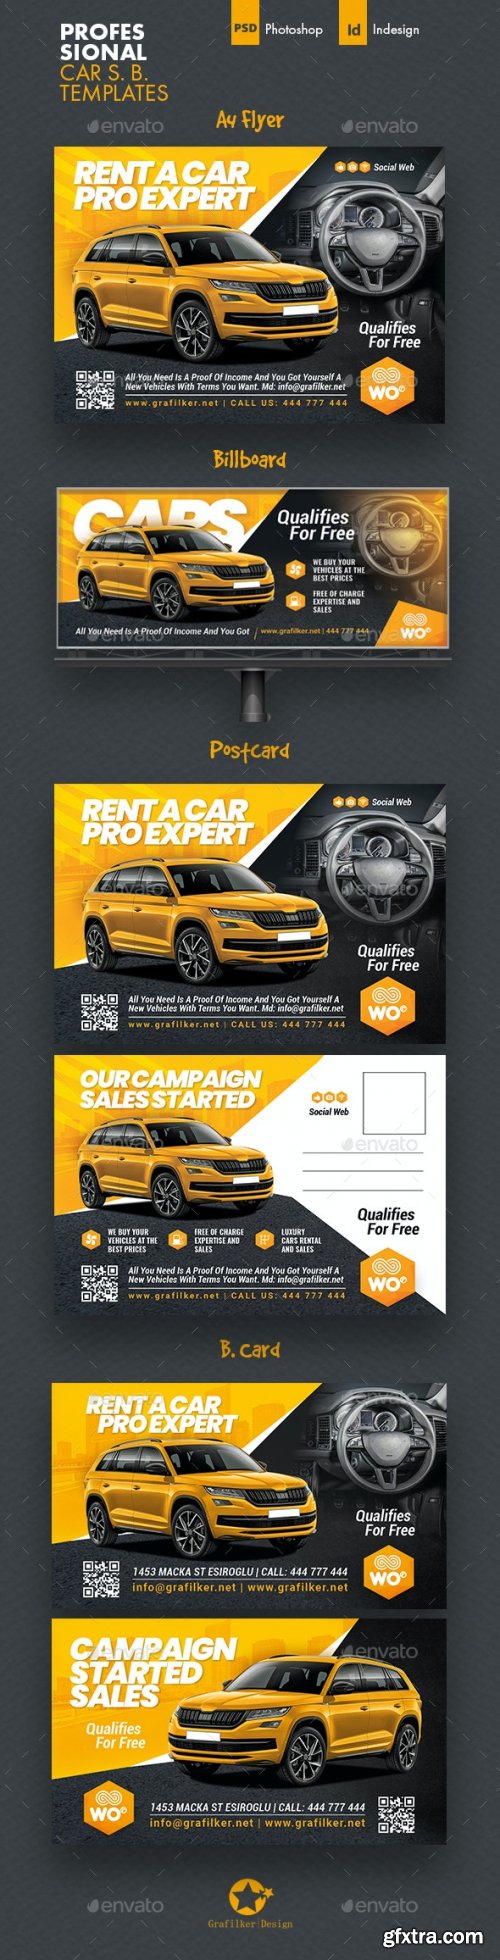 GraphicRiver - Car Sales Bundle Templates 34188727